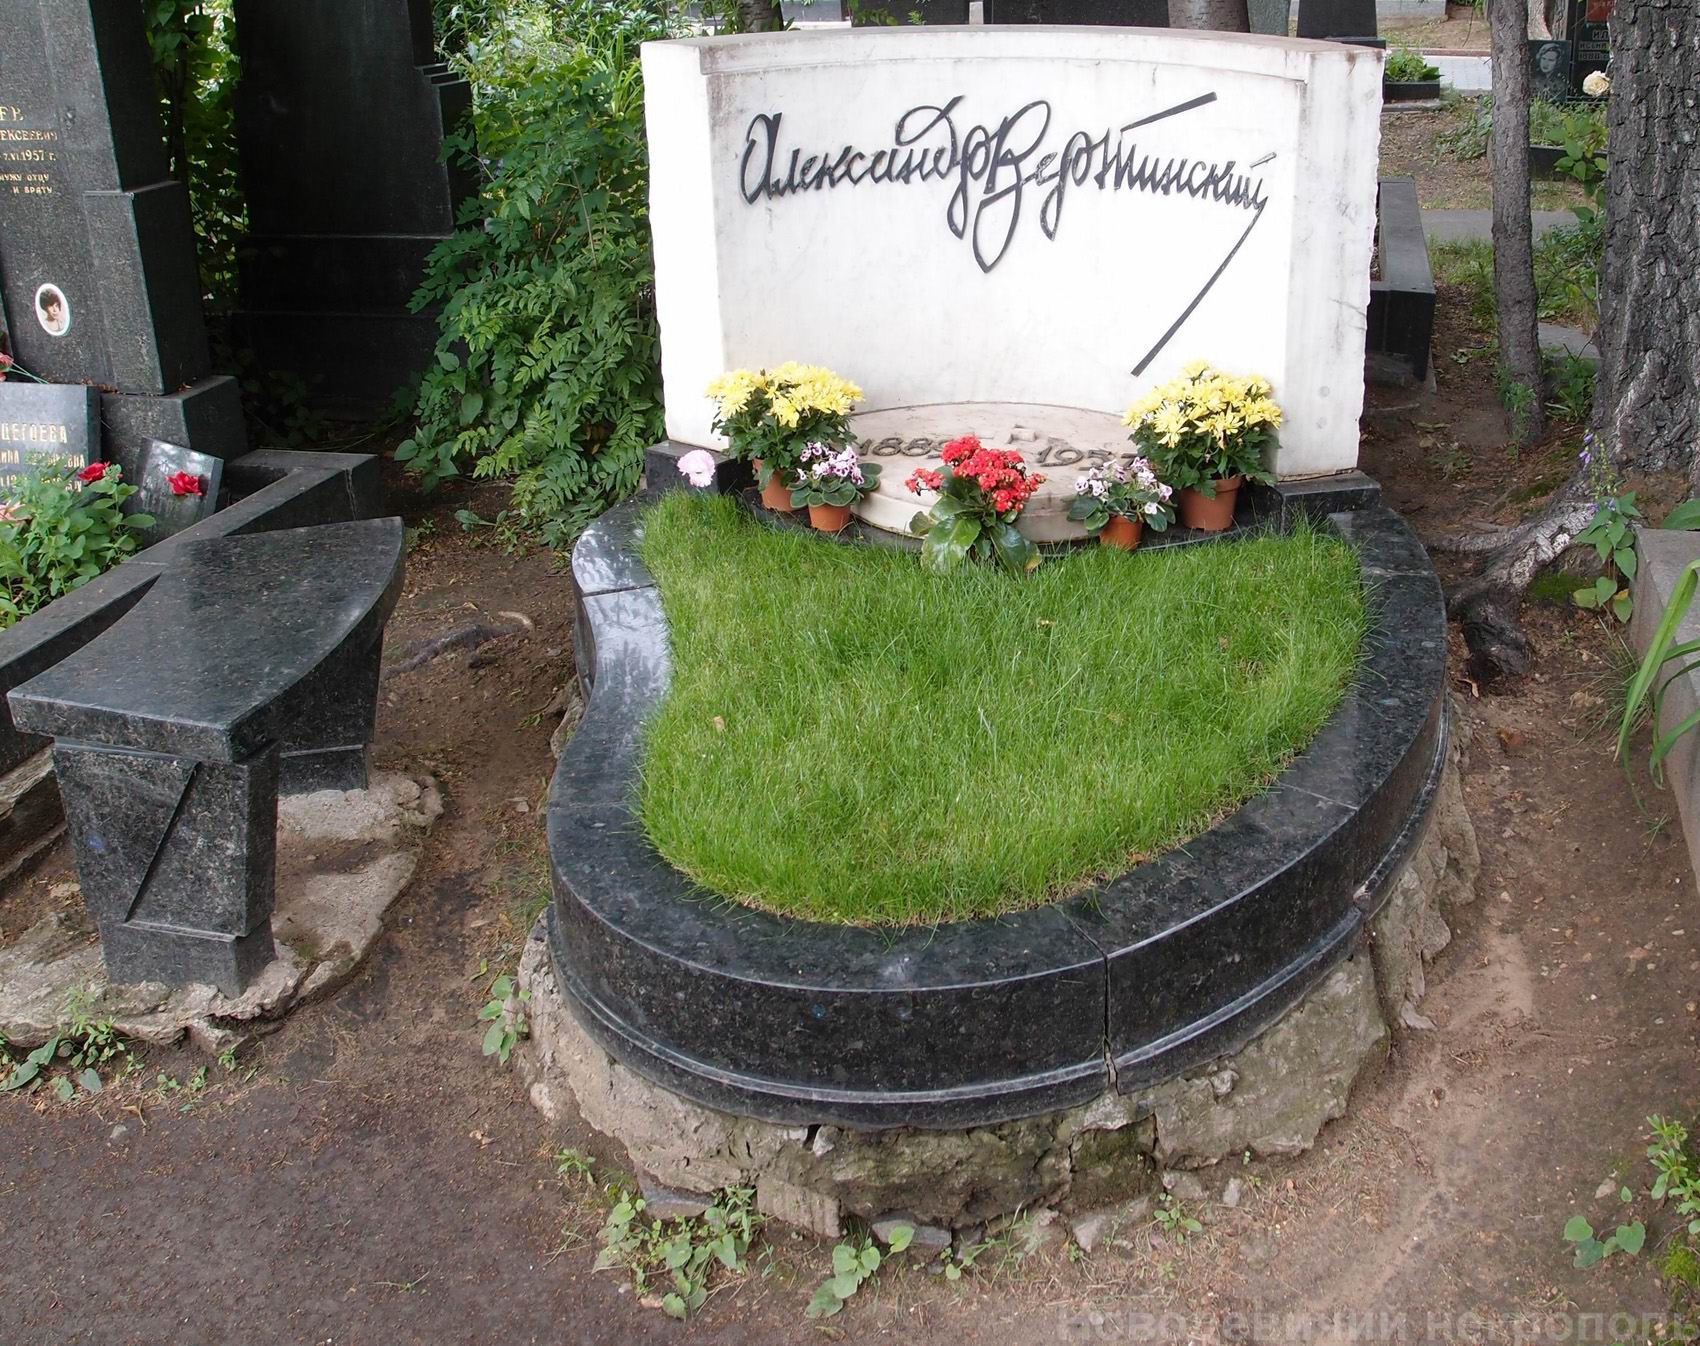 Памятник на могиле Вертинского А.Н. (1889-1957), арх. Е.Розенблюм, В.Быков, на Новодевичьем кладбище (5-5-6). Нажмите левую кнопку мыши, чтобы увидеть фрагмент памятника.